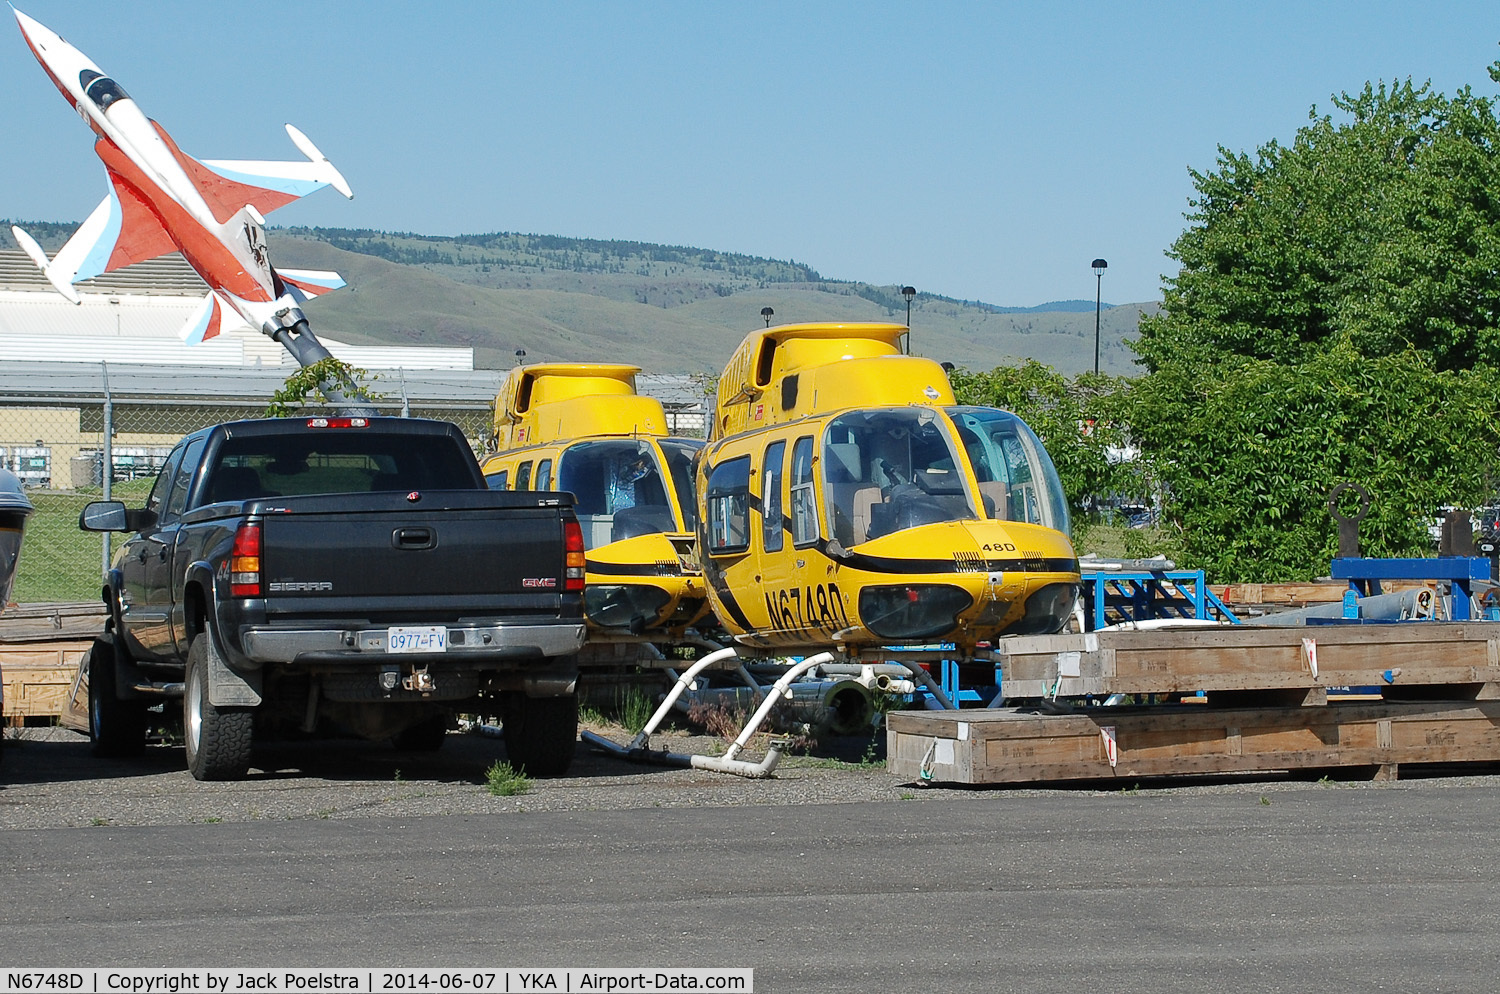 N6748D, 1984 Bell 206L-3 LongRanger III C/N 51106, Stored at Kamloops airport BC